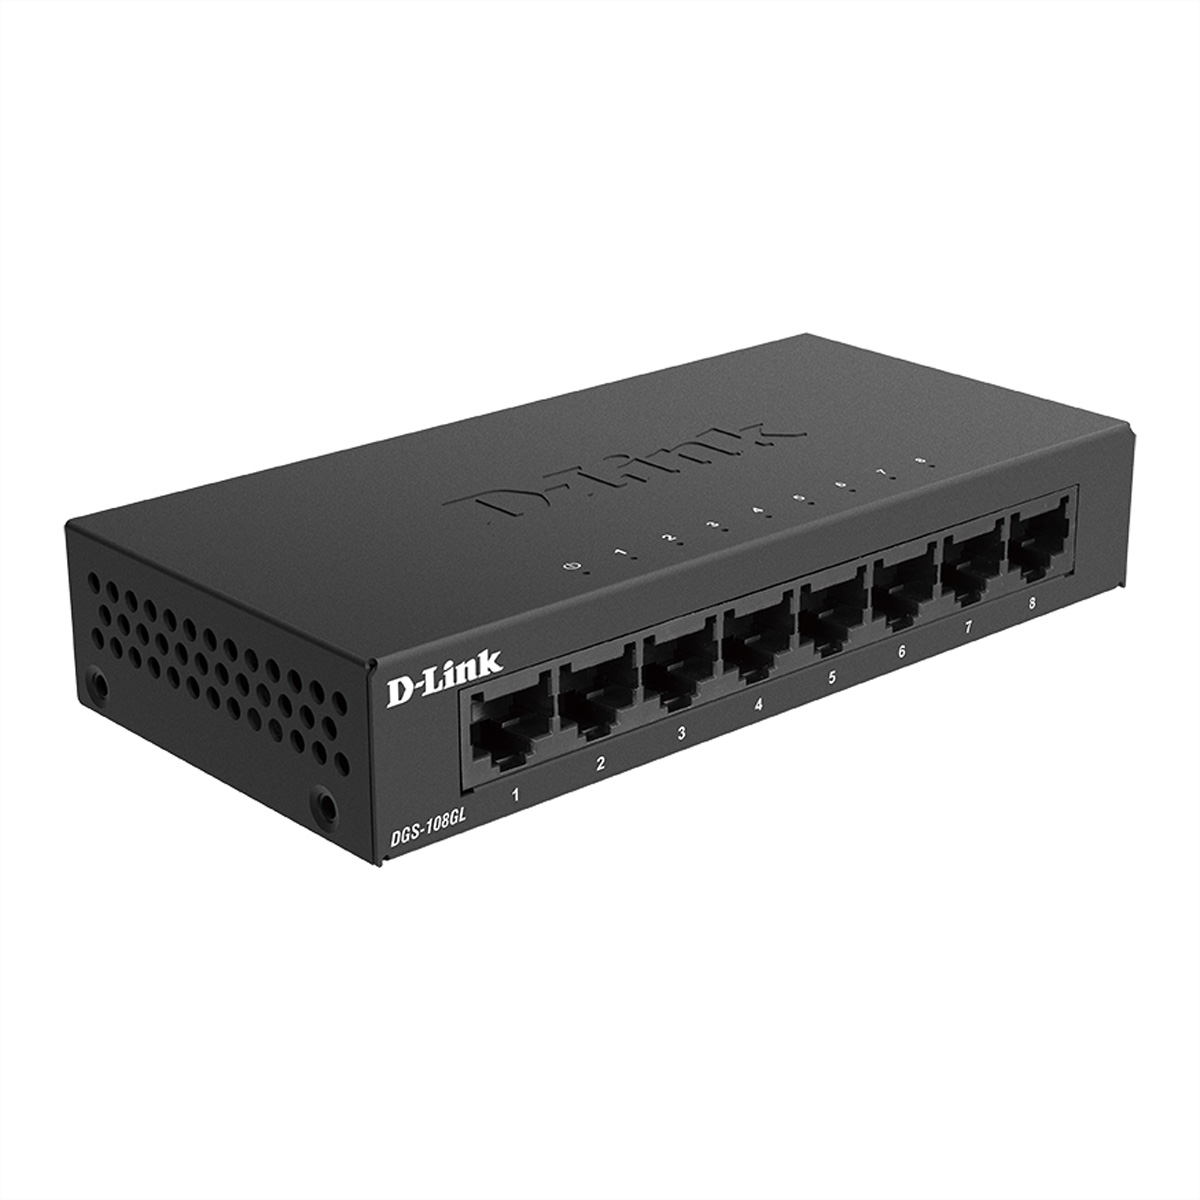 8-Port Ethernet DGS-108GL/E Switch D-LINK Gigabit Light Gigabit Switch